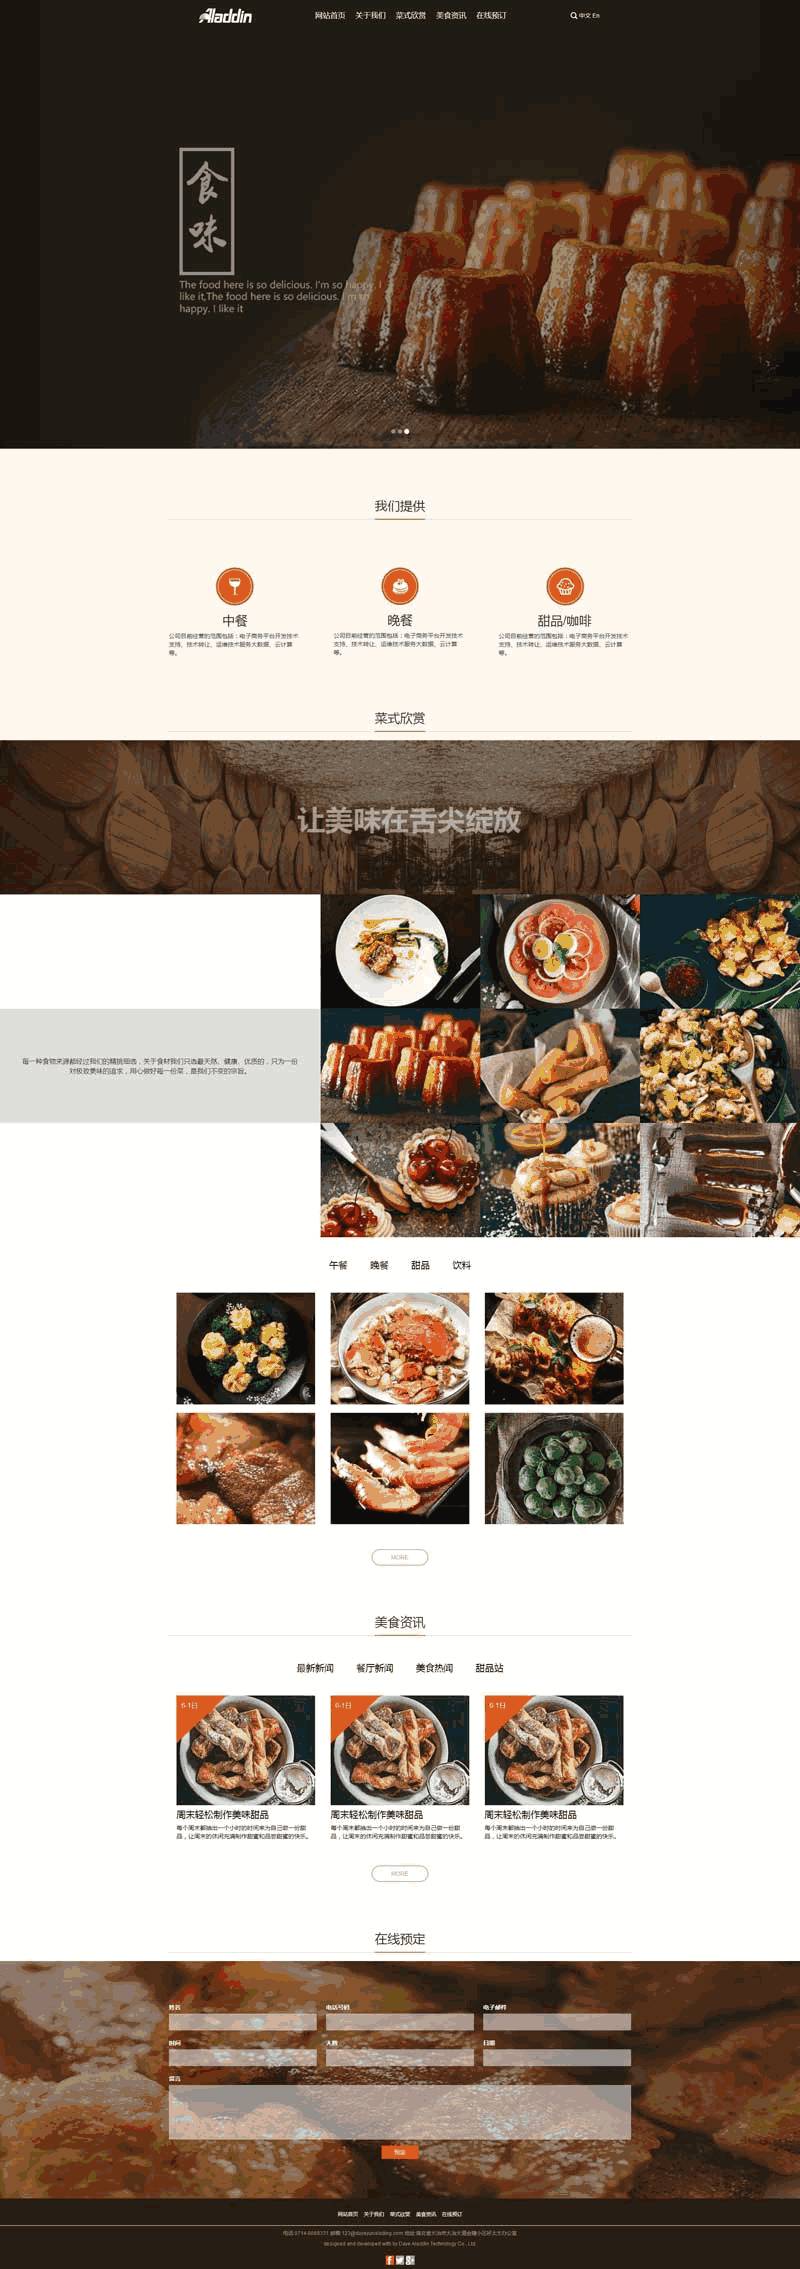 简单宽屏在线预订美食餐厅响应式网站WordPress模板演示图